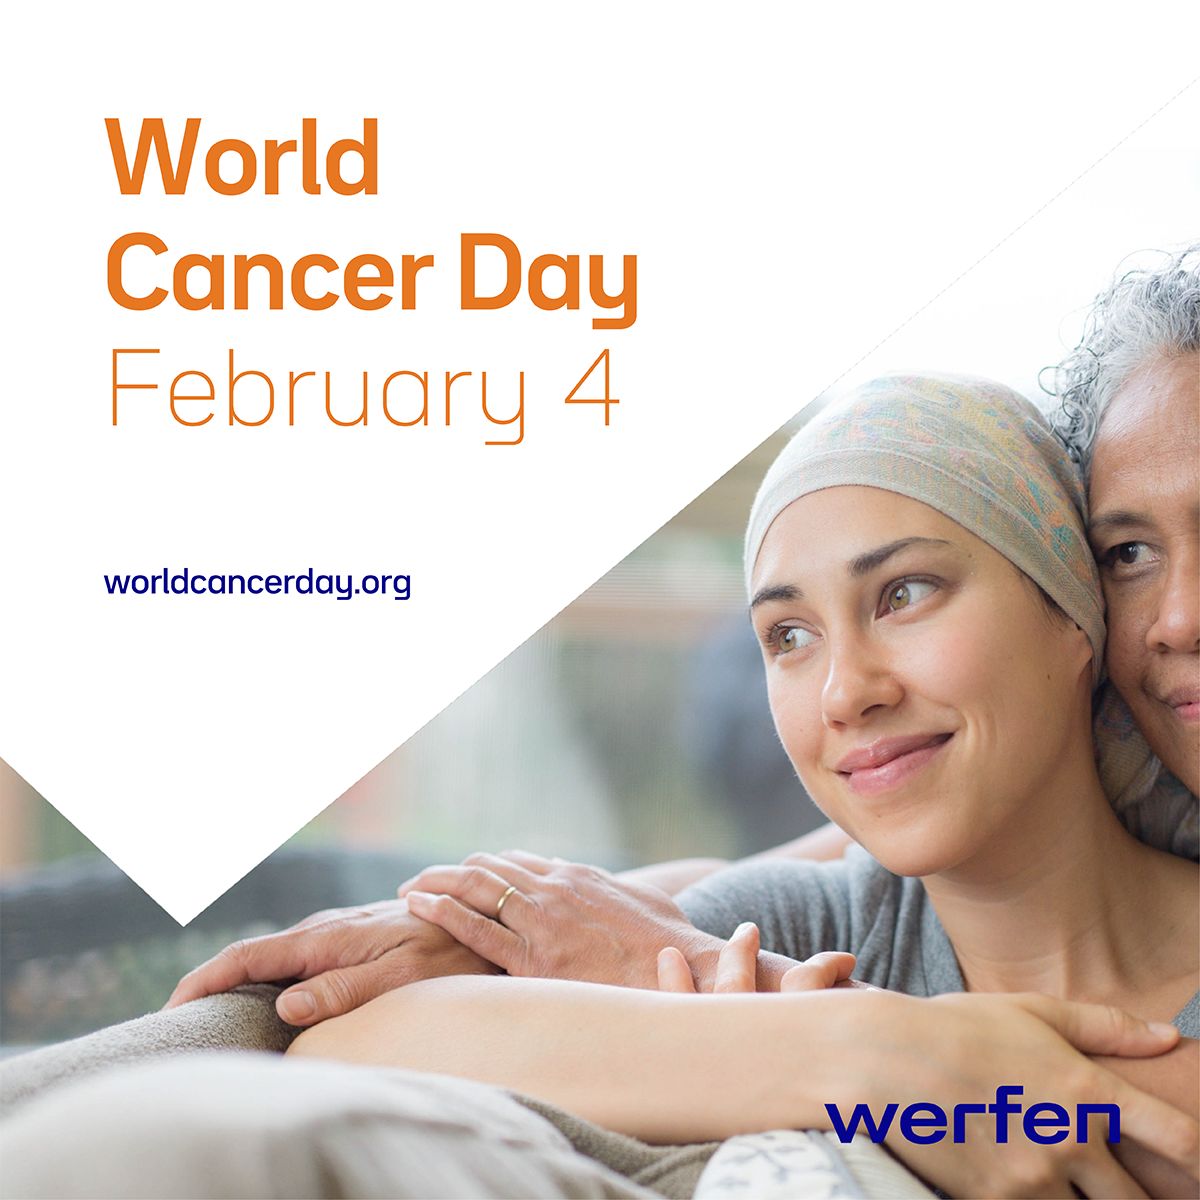 World cancer day